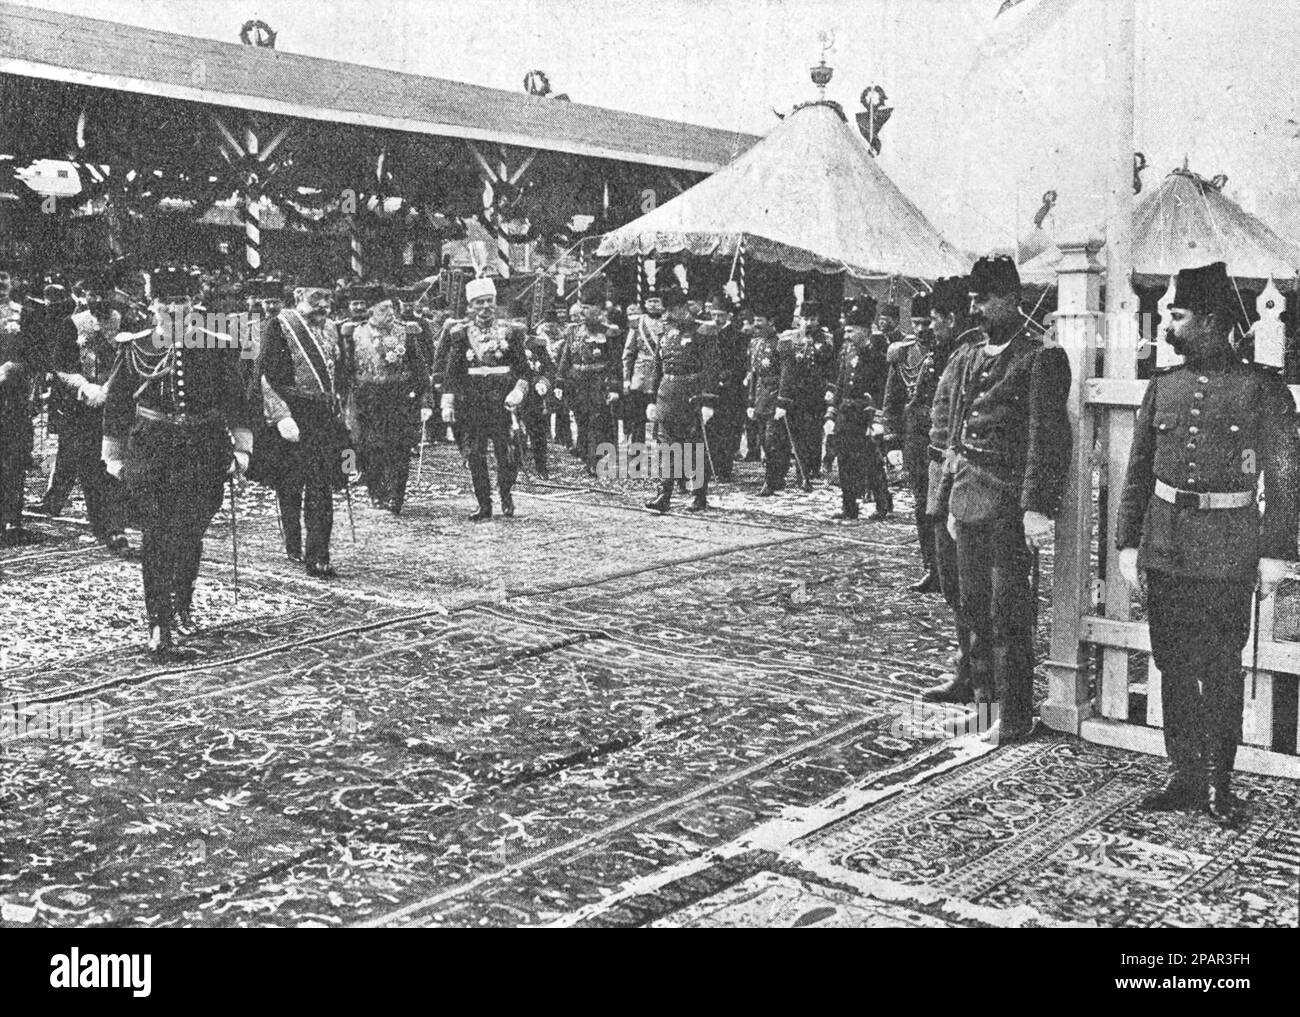 Der osmanische Sultan Mehmed V Reşâd und König Peter I. von Serbien mit seinem Gefolge gehen zum Dampfschiff, um zum Dolma-Bahce-Palast zu gelangen. Foto von 1910. Stockfoto